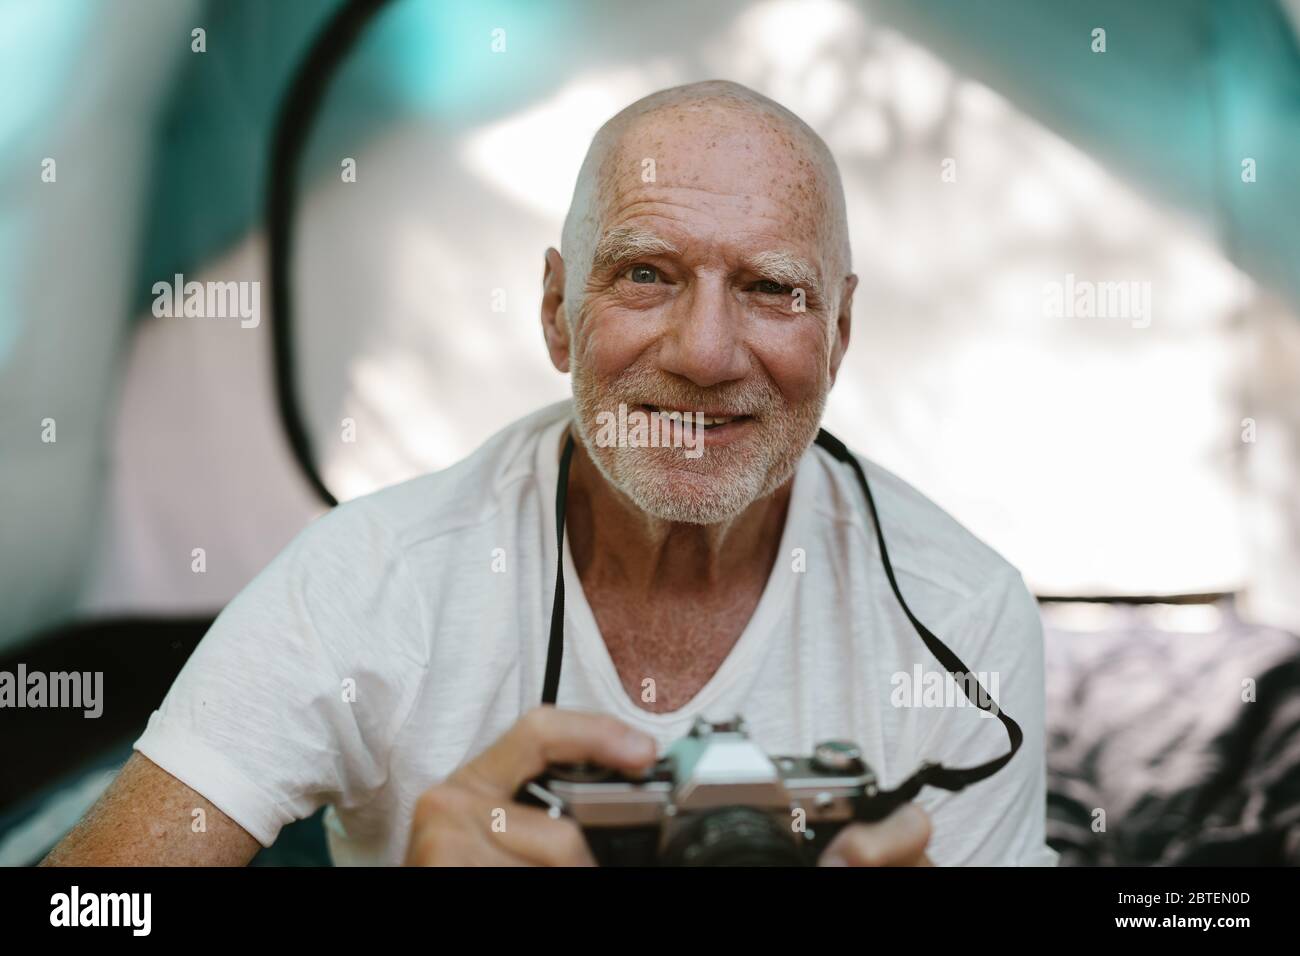 Nahaufnahme eines älteren Mannes, der mit einer Digitalkamera vor seinem Zelt sitzt. Pensionierter Mann fotografiert während des Campens in der Natur. Stockfoto